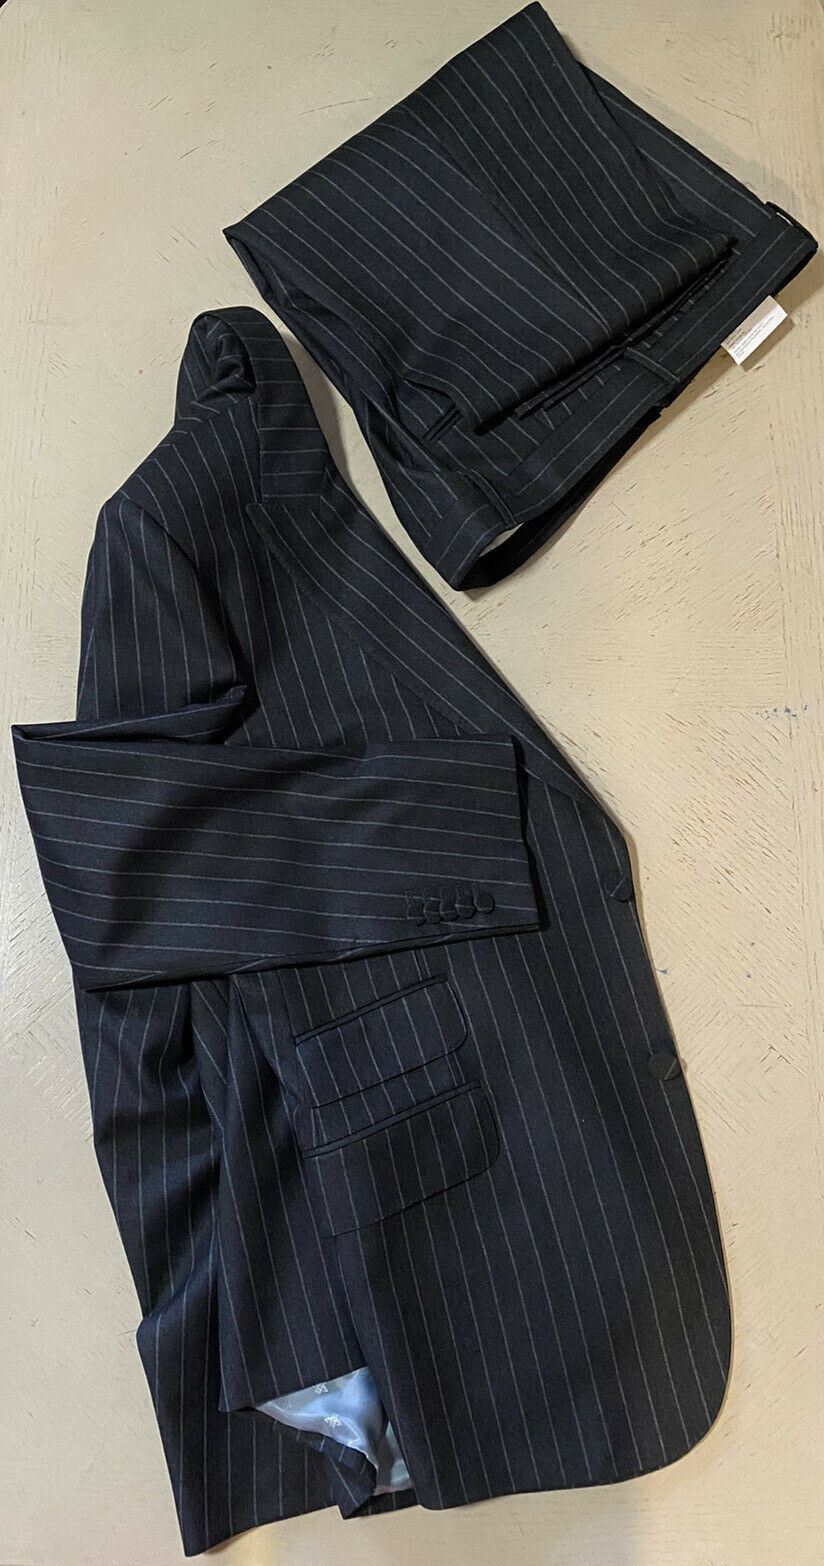 Новый мужской костюм Gucci в полоску DK Grey за 4490 долларов 46R США (56R EU) Италия